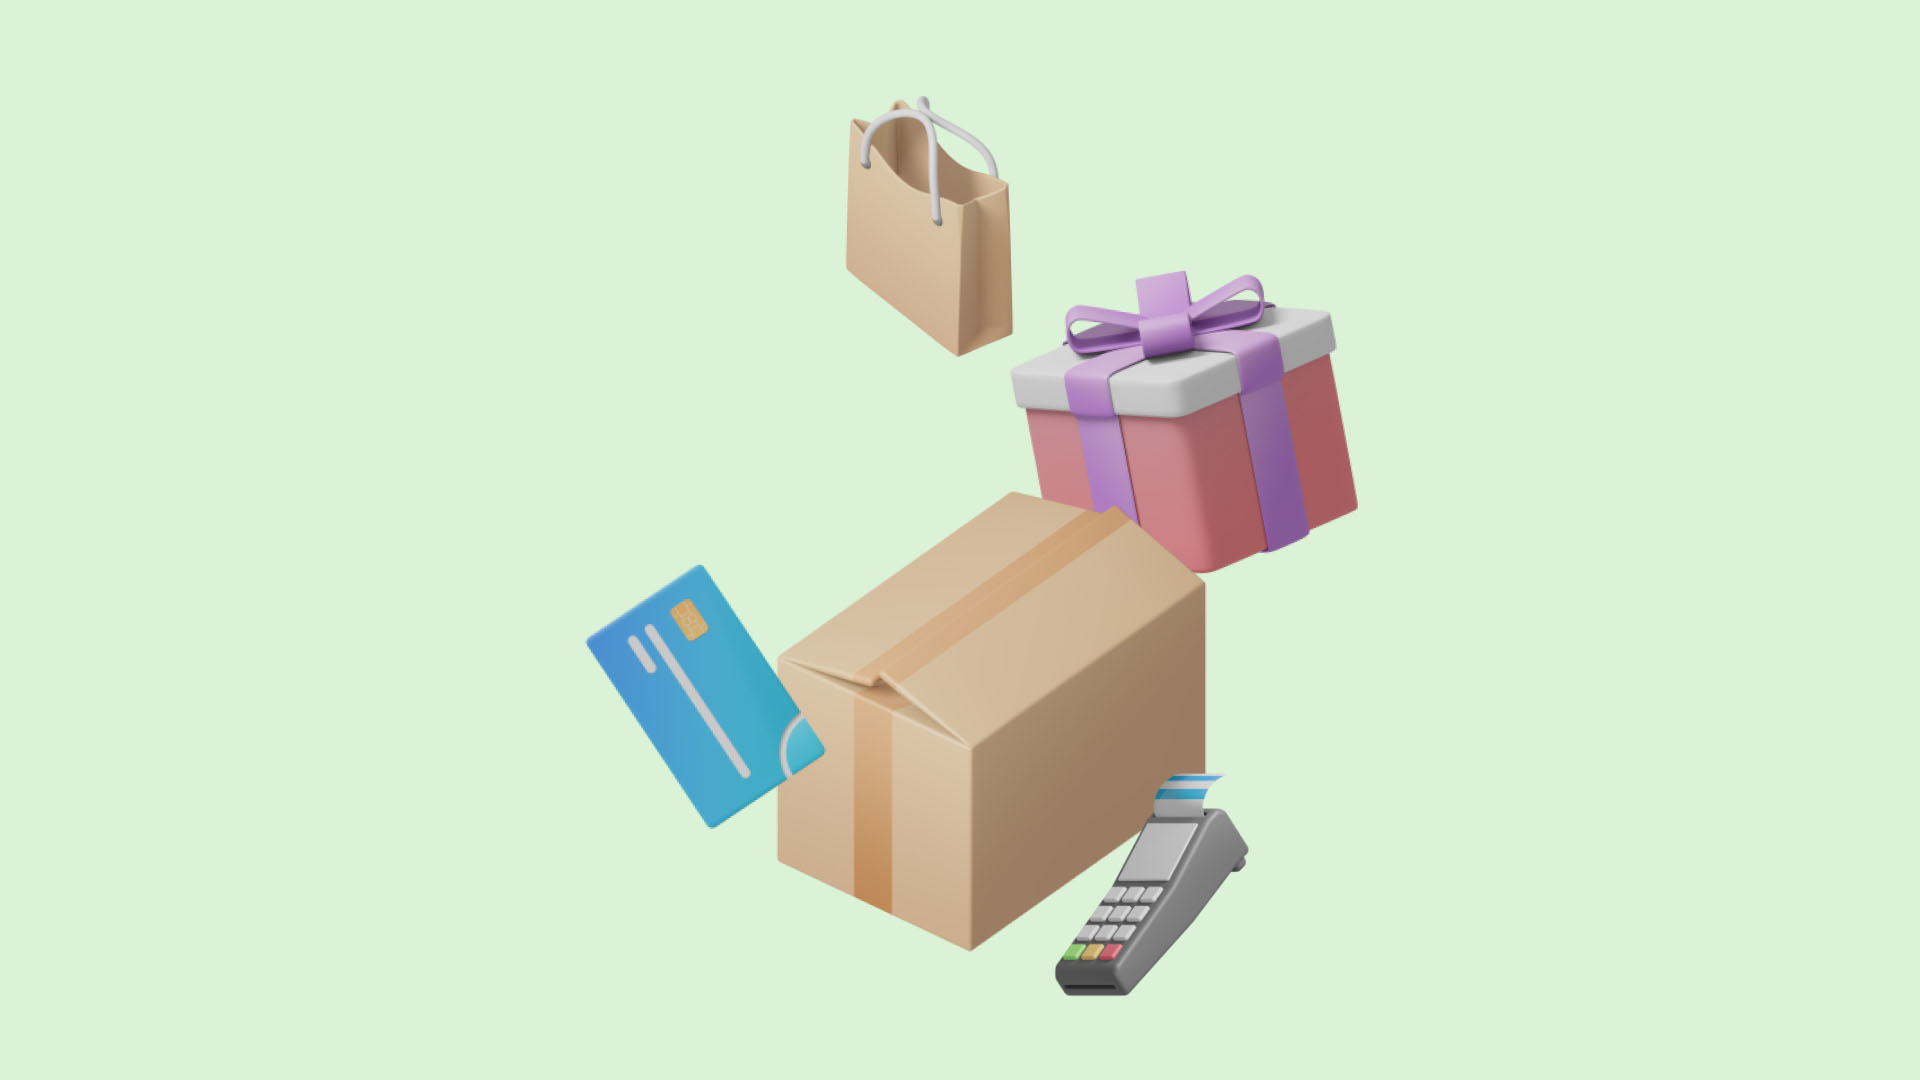 Hellgrüner Hintergrund mit einem Paket, einem Geschenk, einer Einkaufstasche und einem EC-Kartengerät.